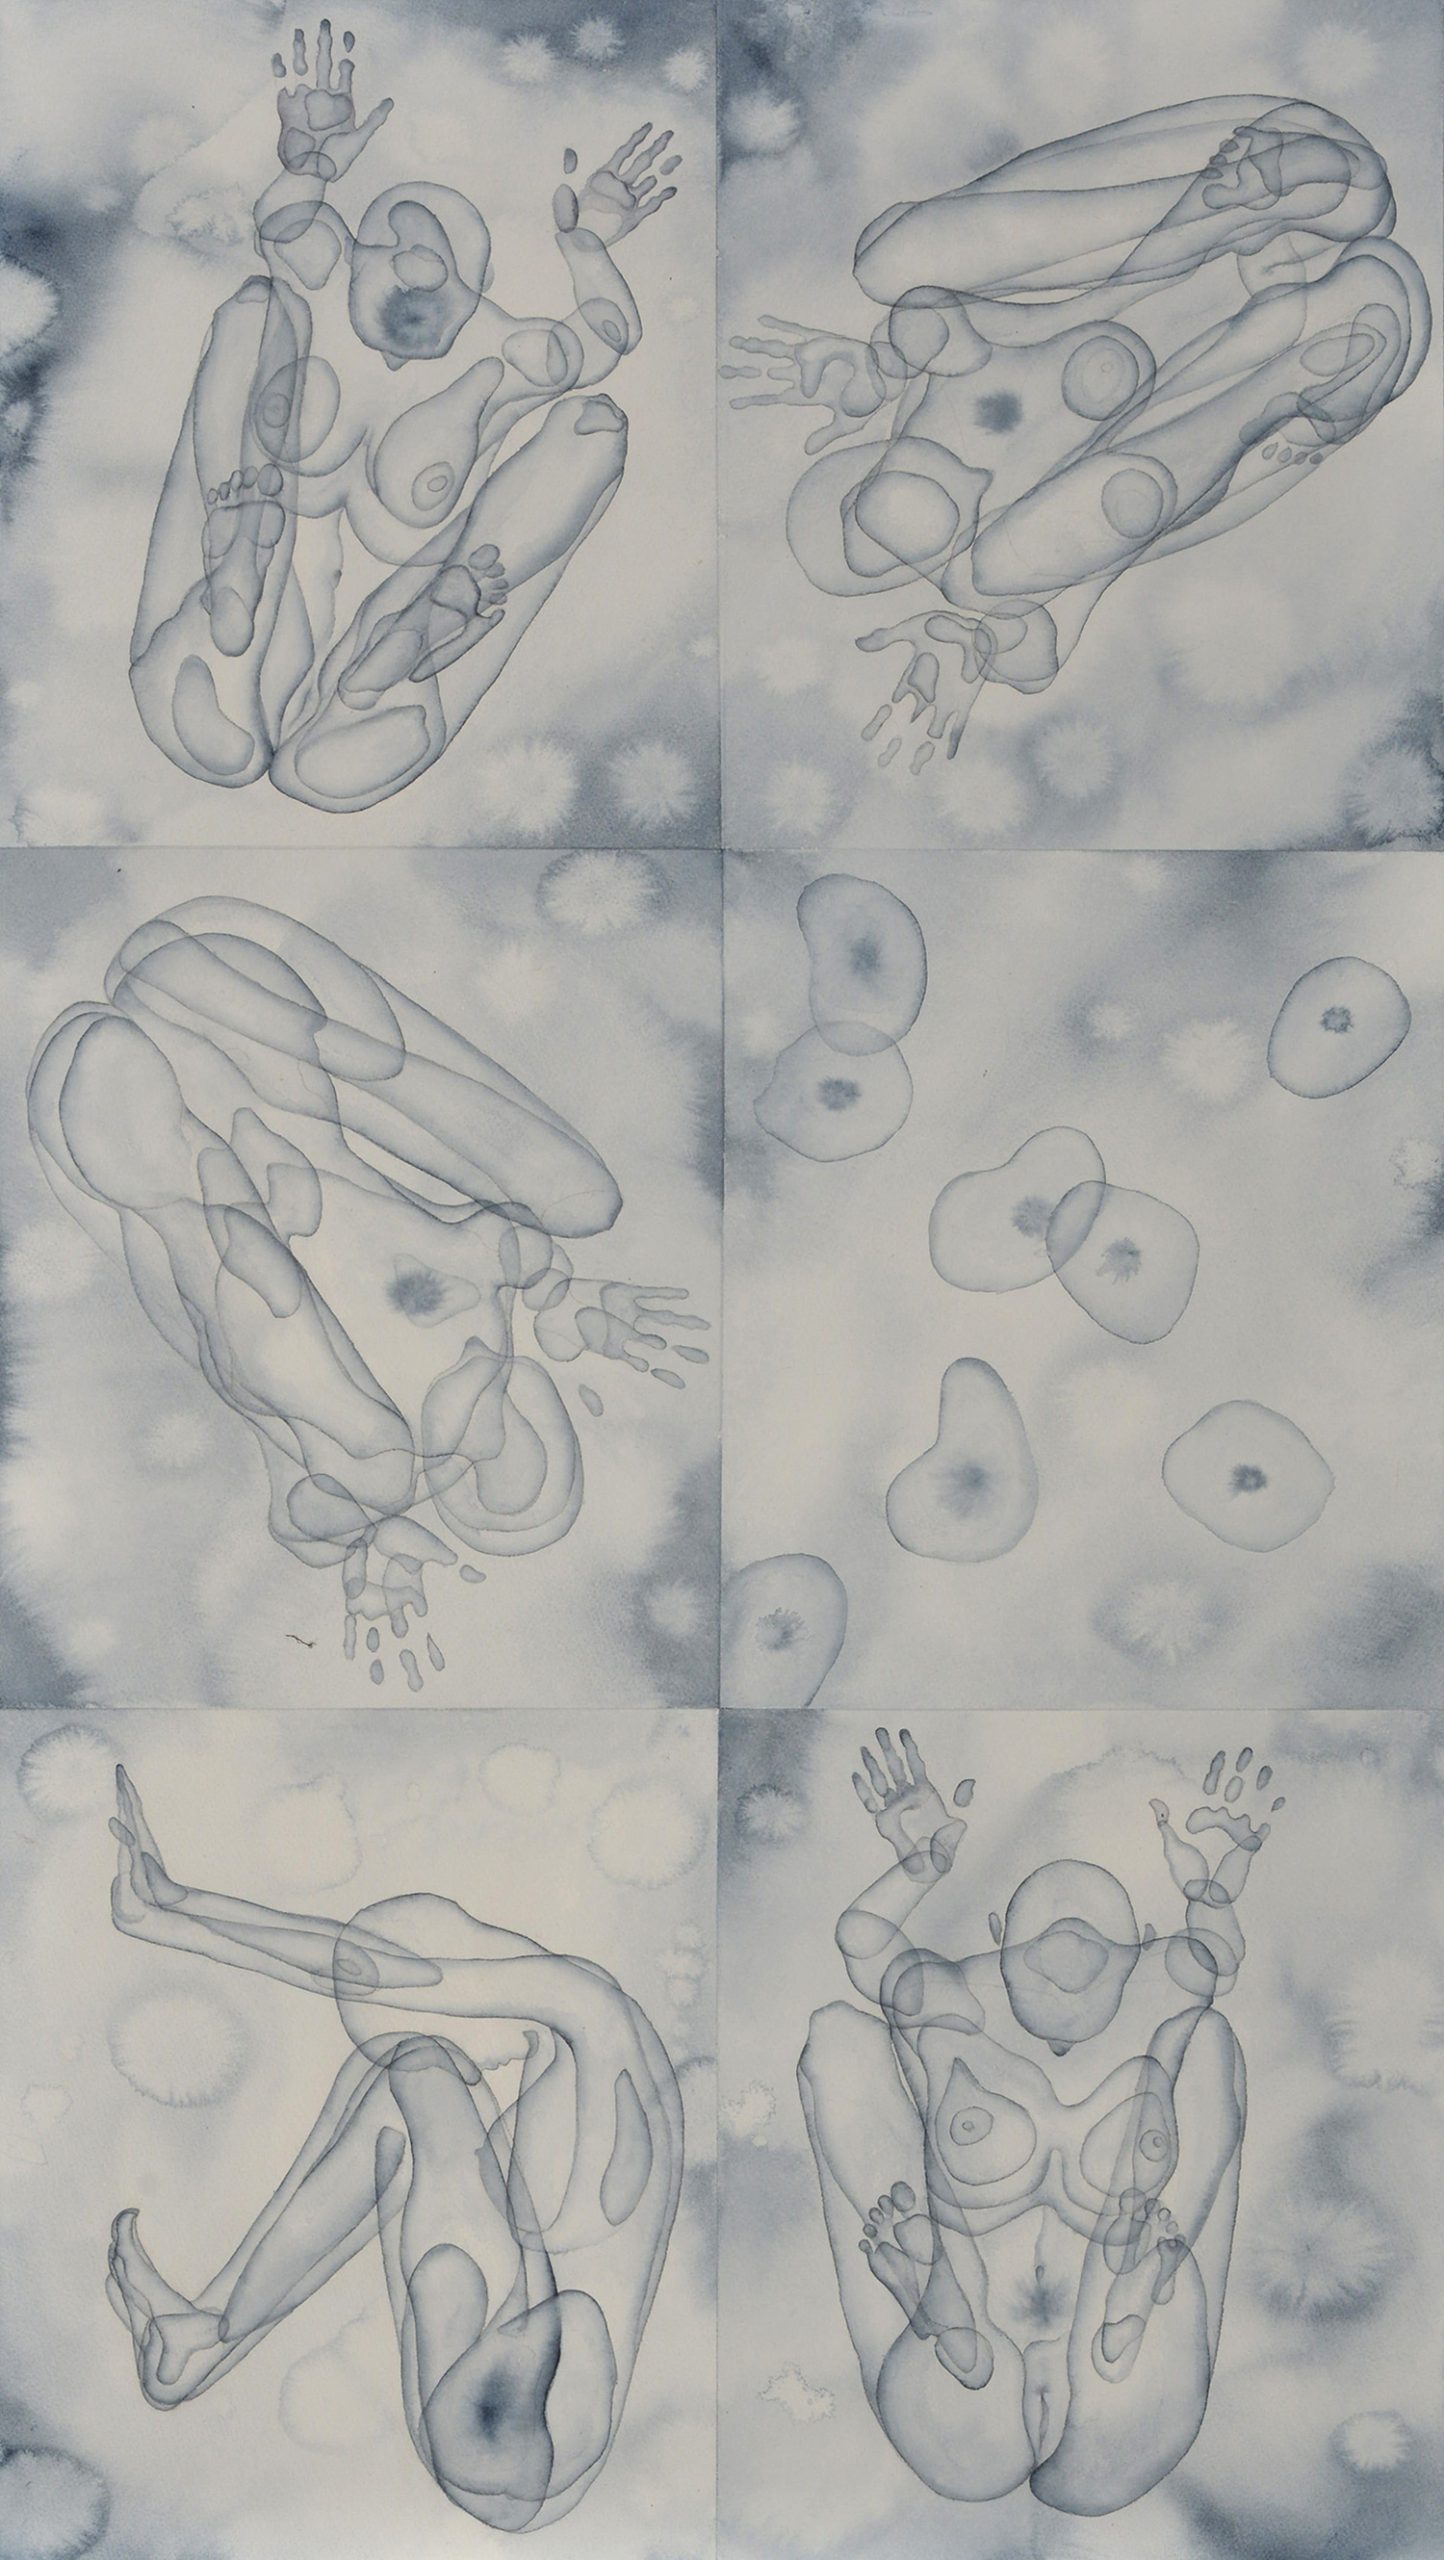 Stefano Bolzano, Morfogenesi emotiva 02, acquerello su carta applicato su due pannelli, 61x108,5 cm, 2019.